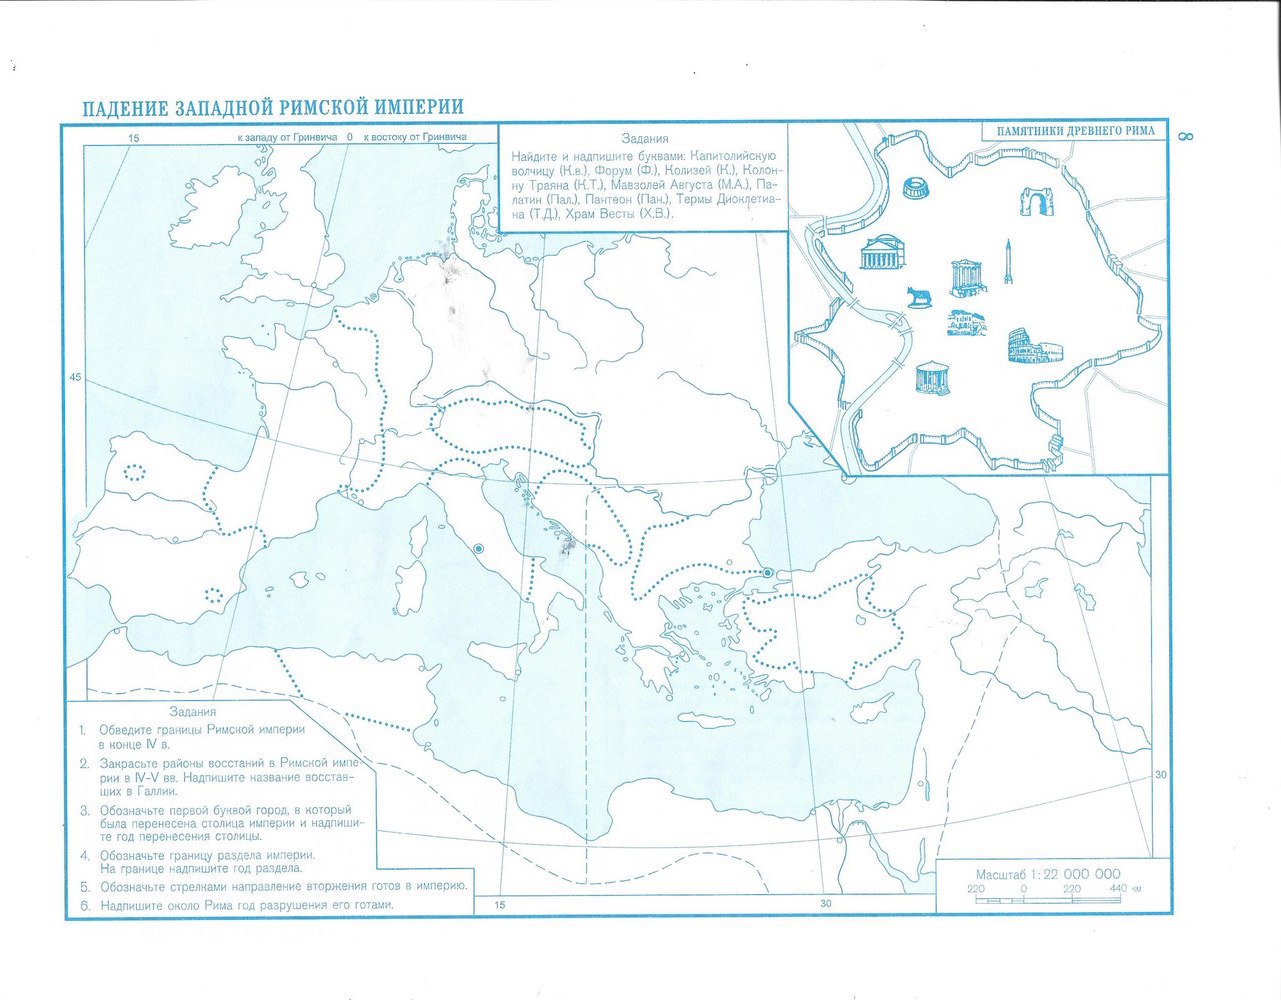 Государства и территории к концу 5 века контурная карта